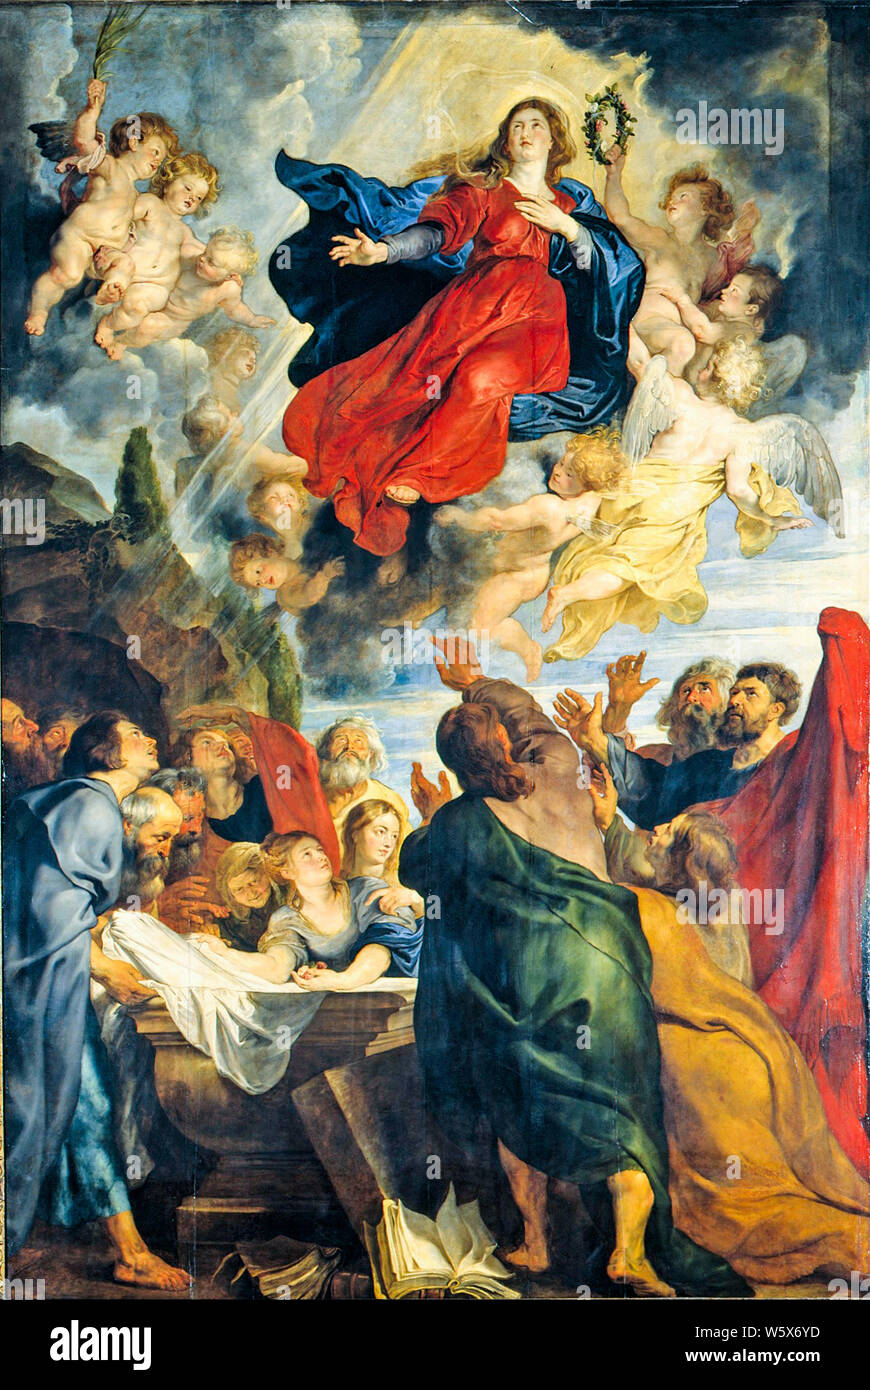 Peter Paul Rubens, la peinture, l'Assomption de la Vierge Marie, 1616-1618 Banque D'Images